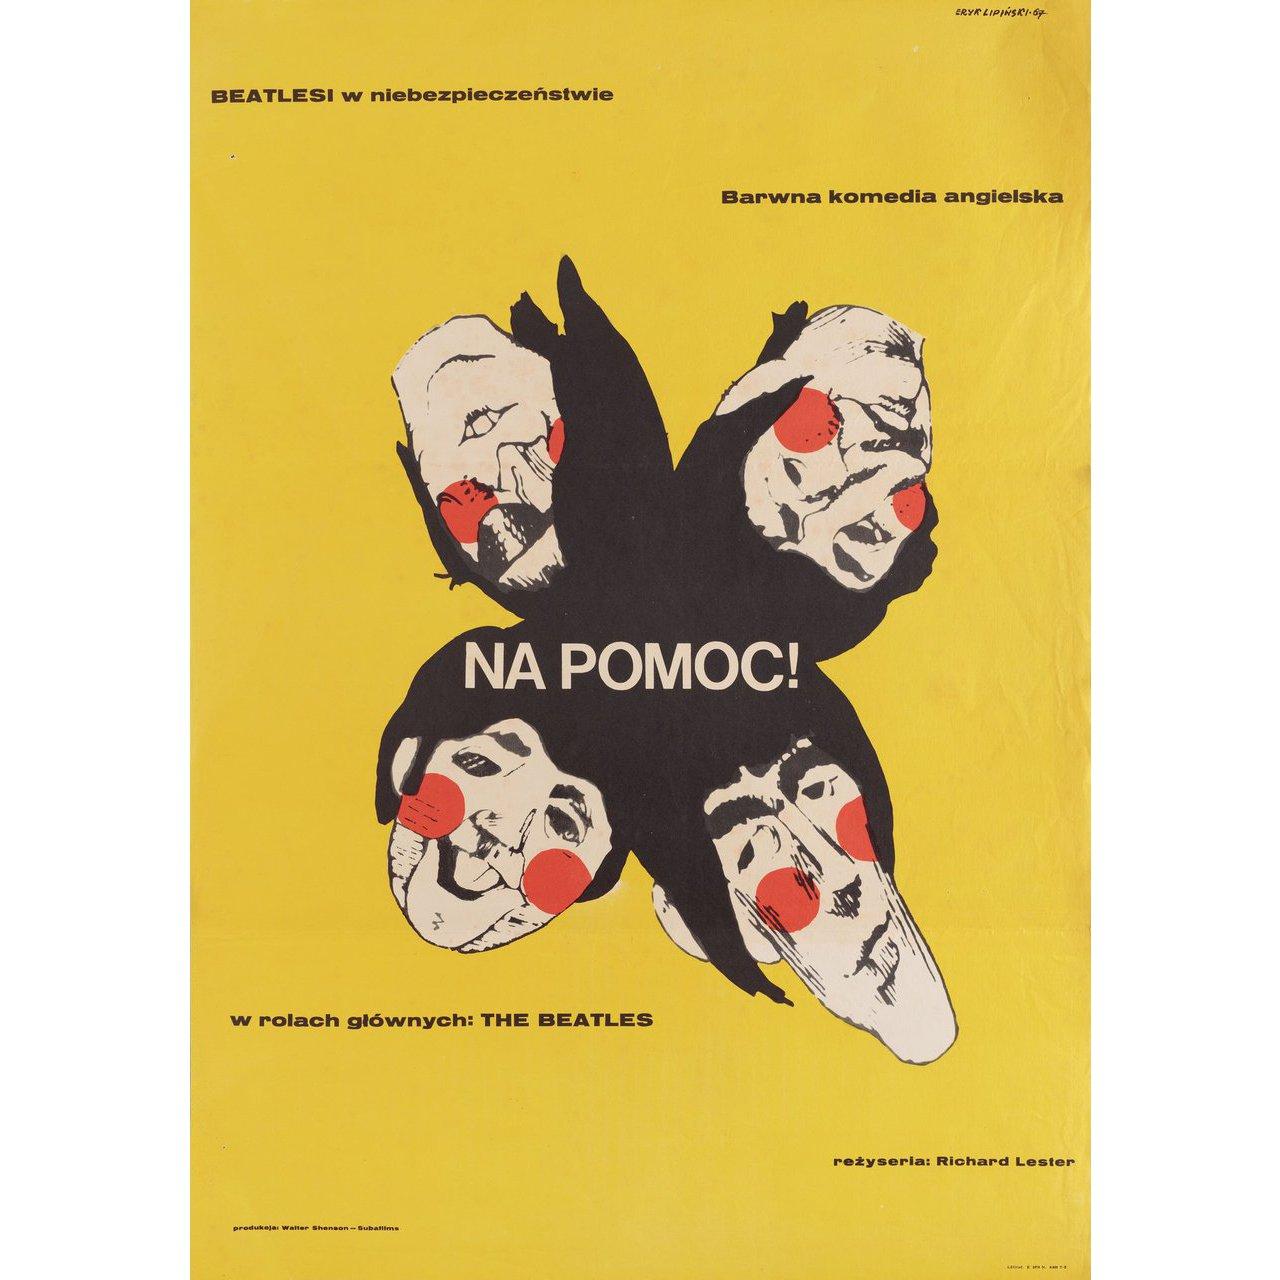 Original 1967 polnisches A1-Plakat von Eryk Lipinski für den Film Help! unter der Regie von Richard Lester mit The Beatles / Leo McKern / Eleanor Bron / Victor Spinetti. Sehr guter Zustand, gefaltet und stockfleckig. Viele Originalplakate wurden